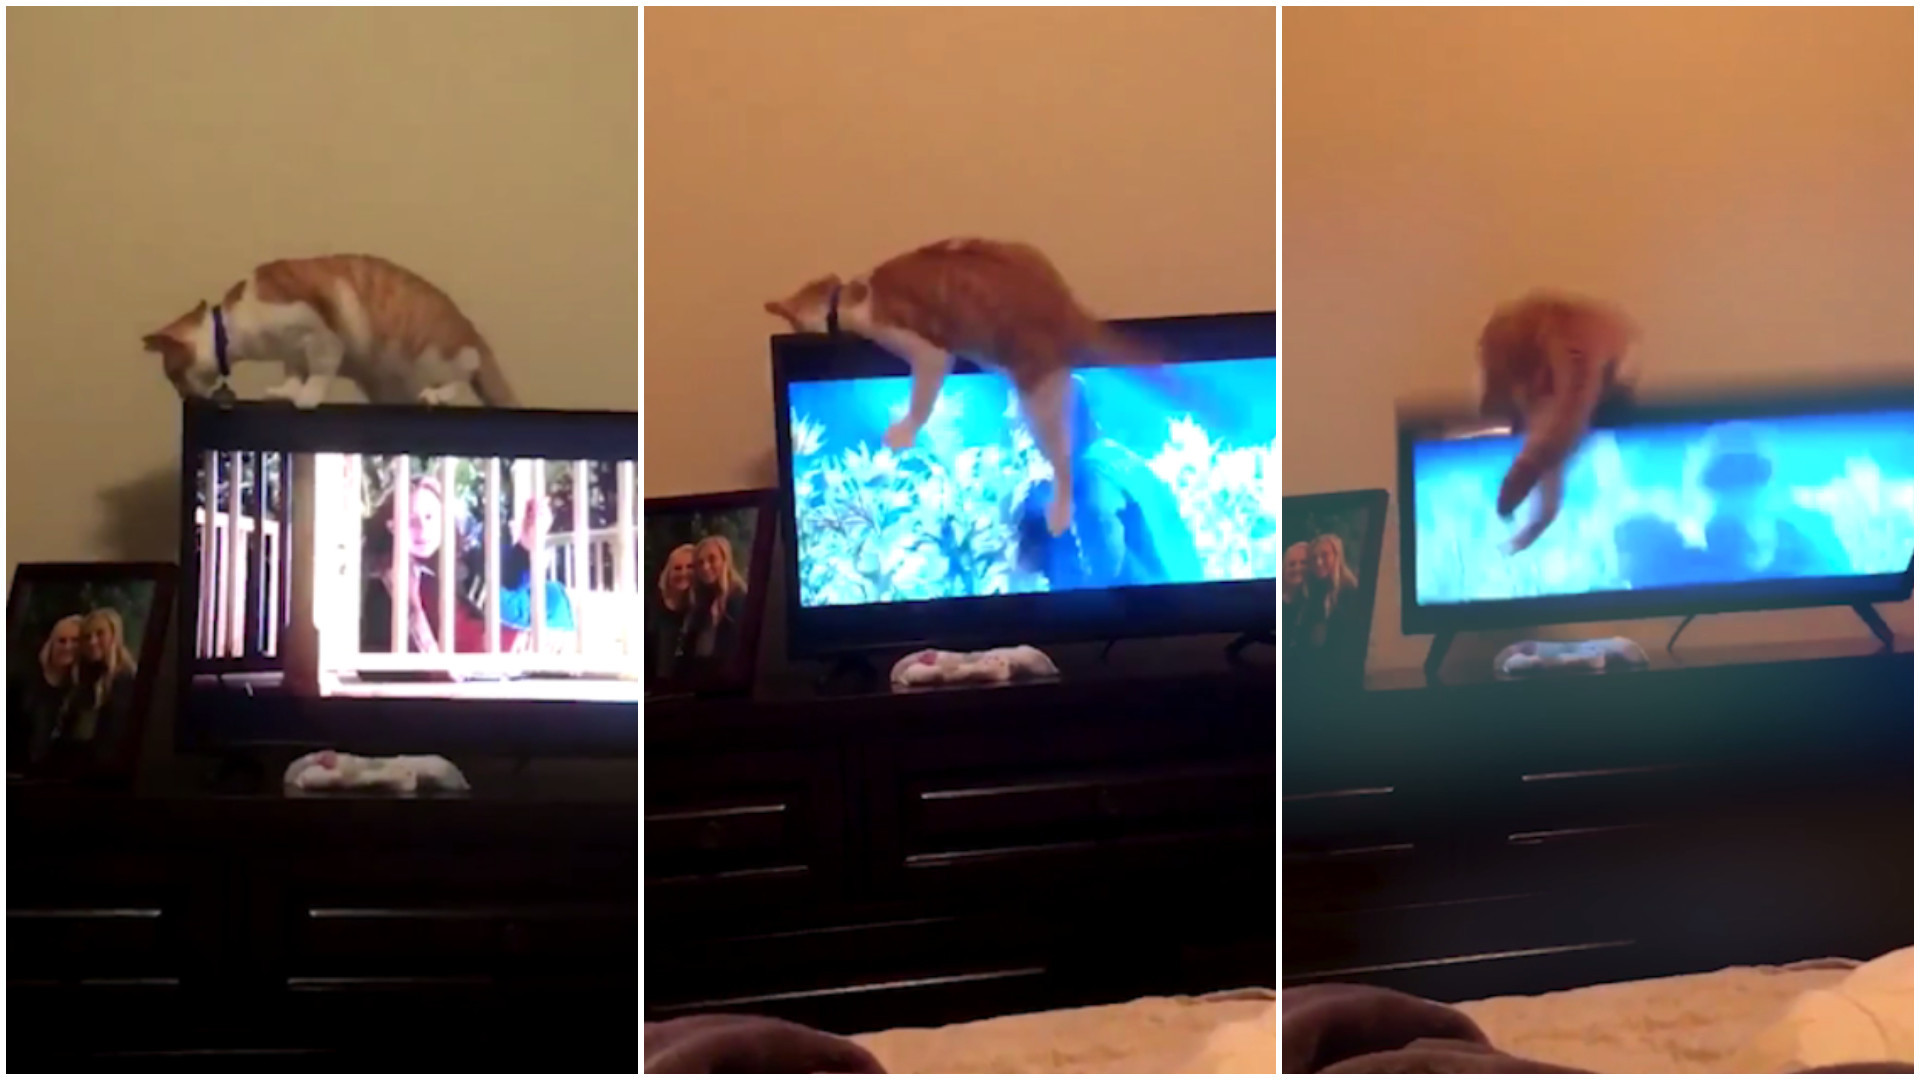 Gato perde equilíbrio e quebra televisão